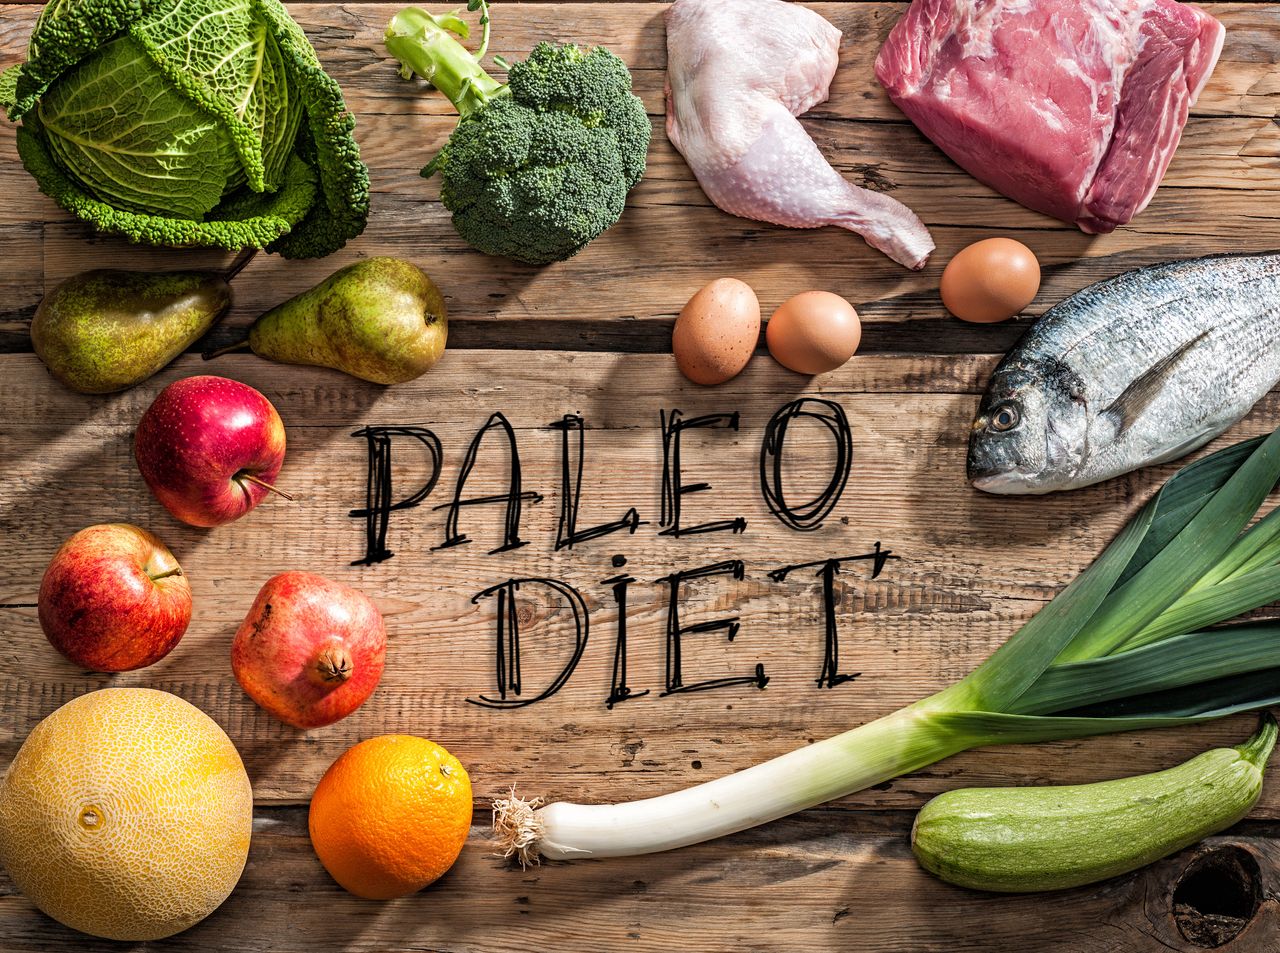 Paleo - chế độ ăn người tối cổ, lấy cảm hứng từ lối sống của tổ tiên thời kỳ đồ đá.